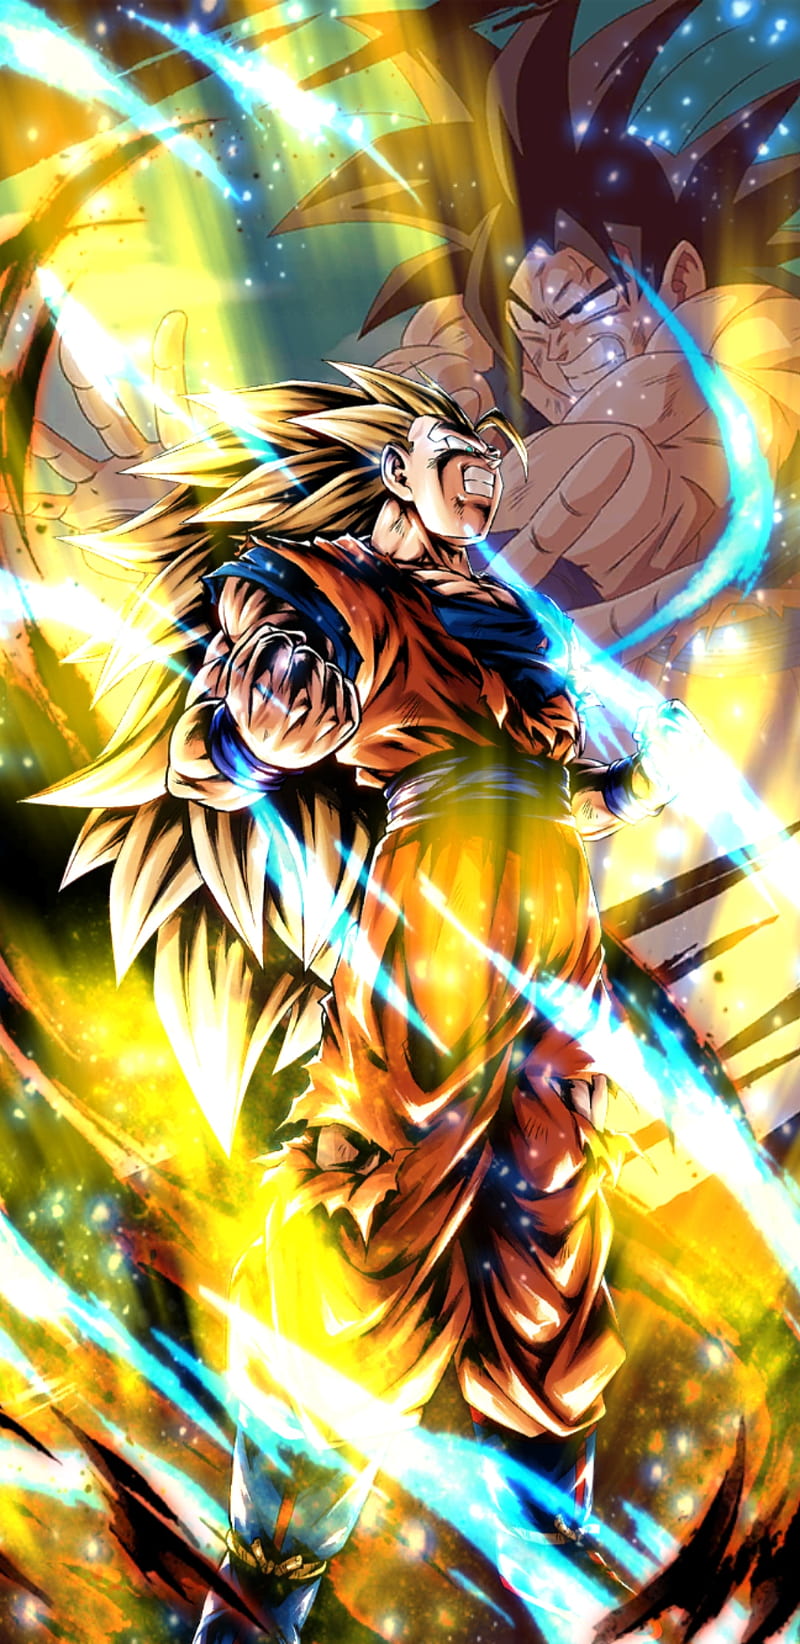 SDBH Goku y Goku Xeno (Wallpaper) by VictorTostado on DeviantArt